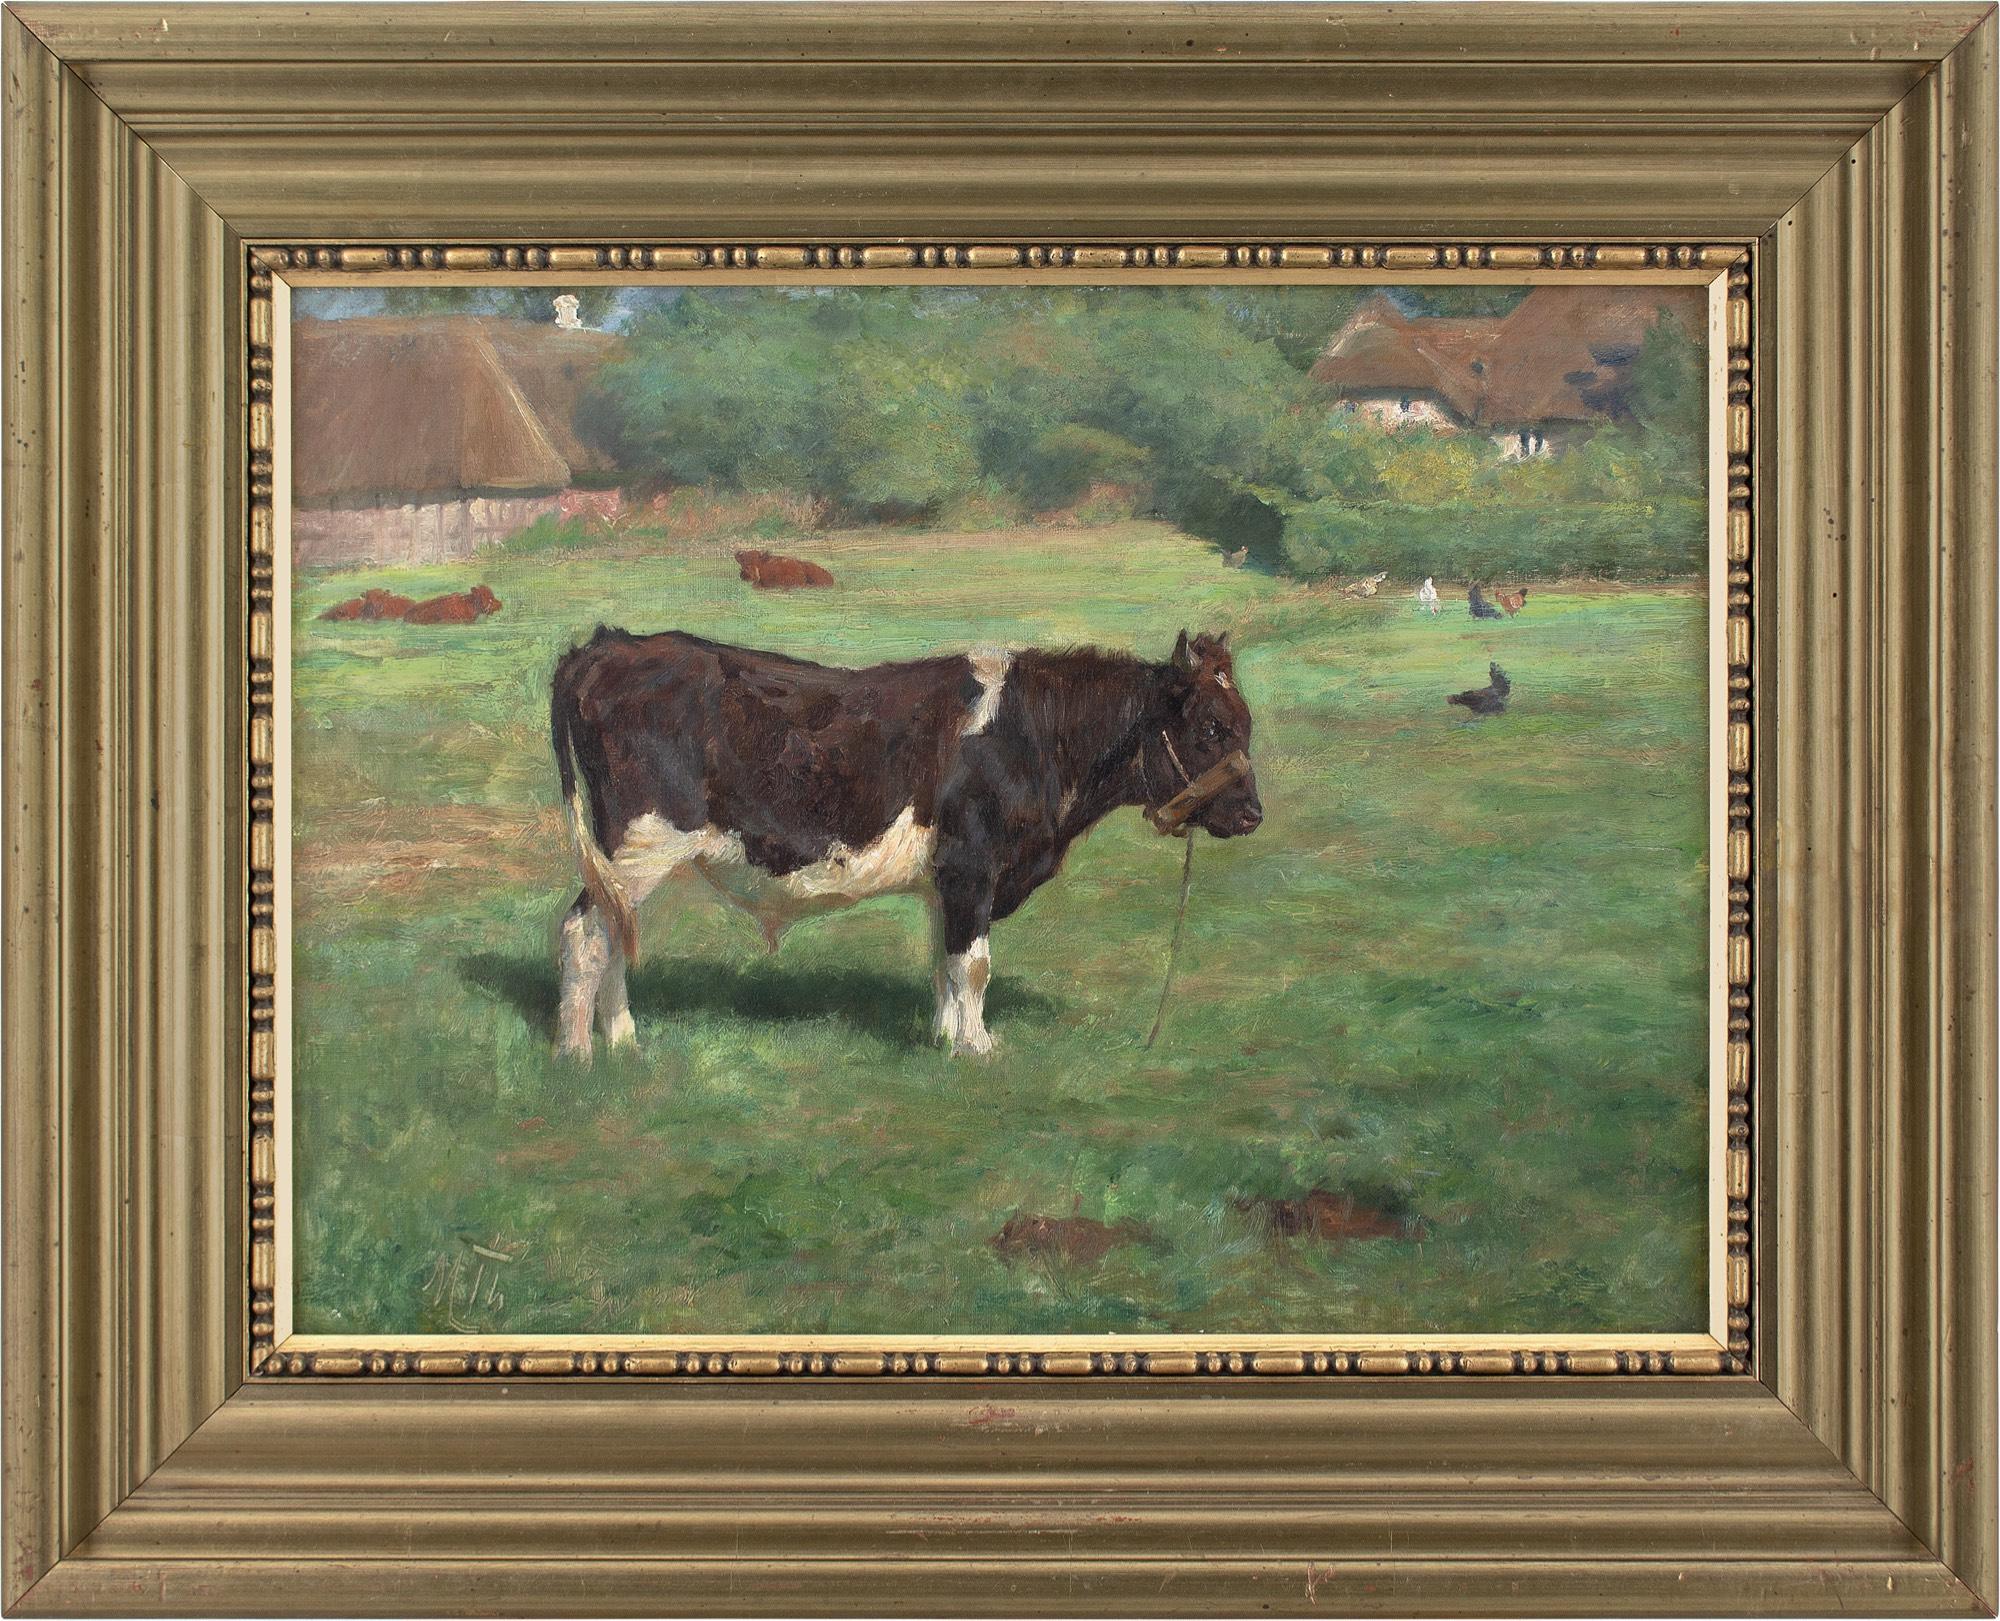 Dieses Ölgemälde des dänischen Künstlers Michael Therkildsen (1850-1925) aus dem frühen 20. Jahrhundert zeigt eine ländliche Landschaft mit einem stehenden Stier, ruhenden Rindern, Hühnern und strohgedeckten Gebäuden. Es ist gekonnt umgesetzt und